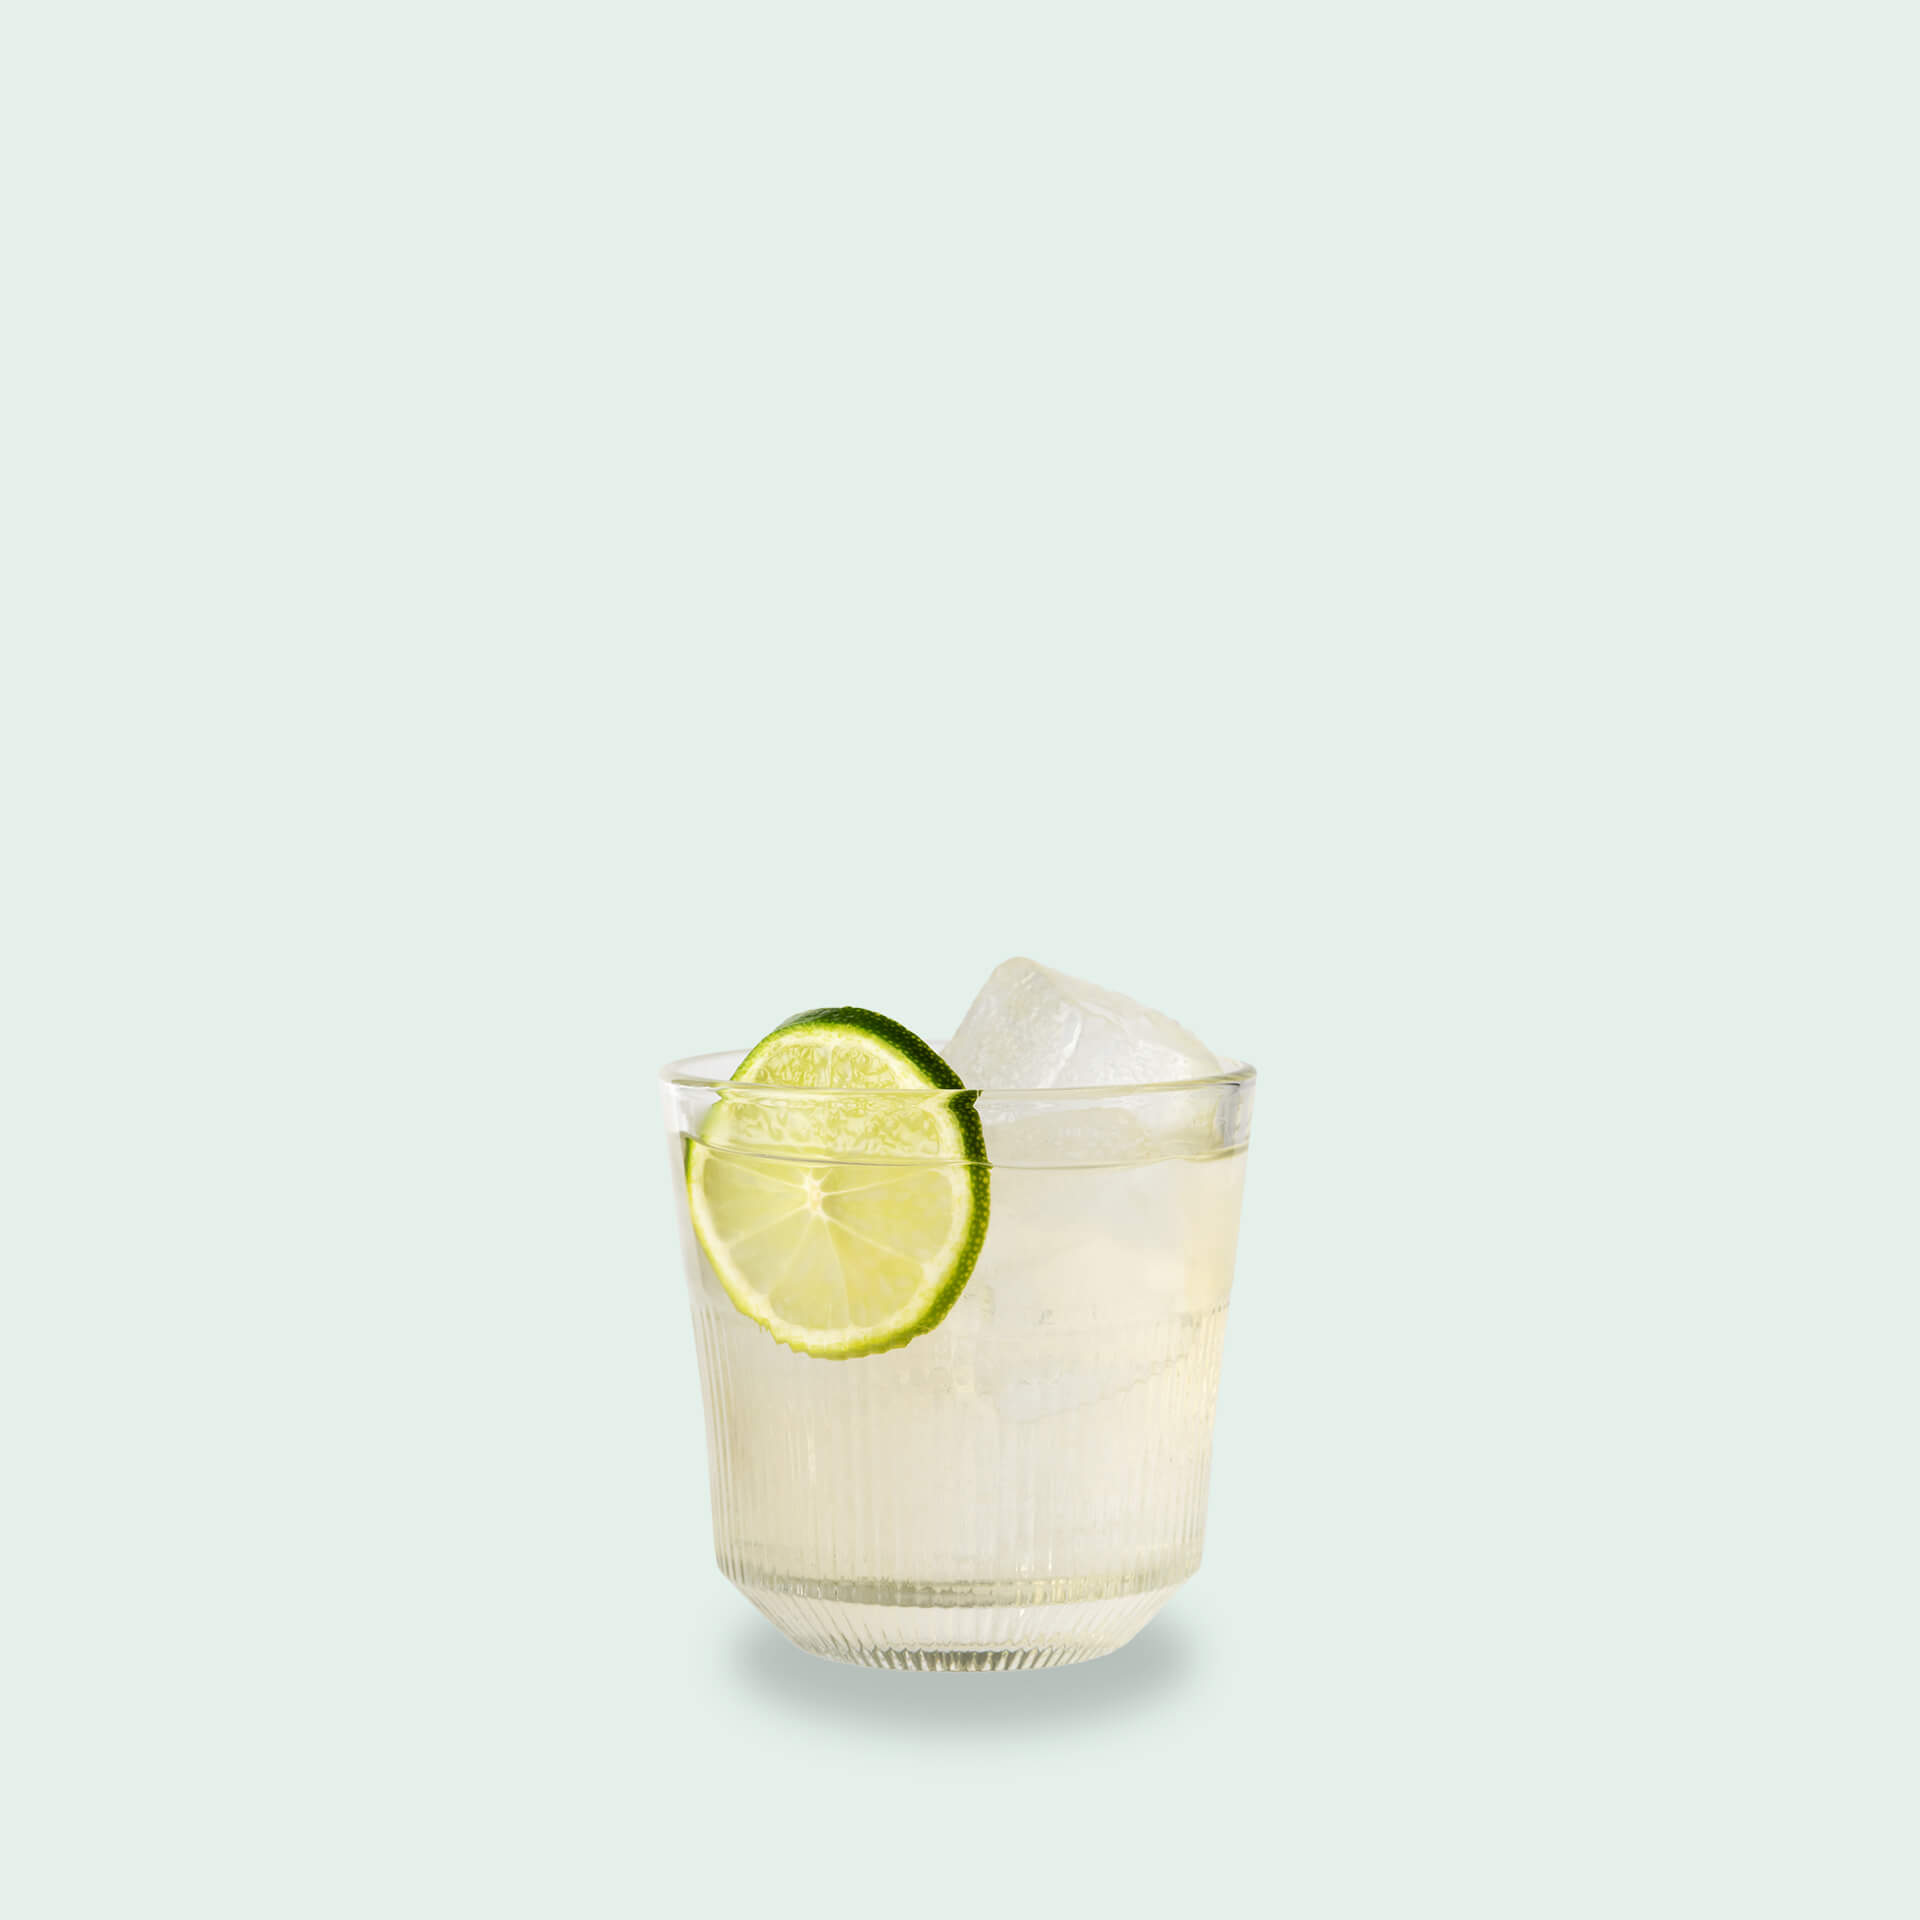 Agave n Oil - eine Abwandlung des Corn n oil Cocktails in der Tequila Cocktail Box von Drink Syndikat